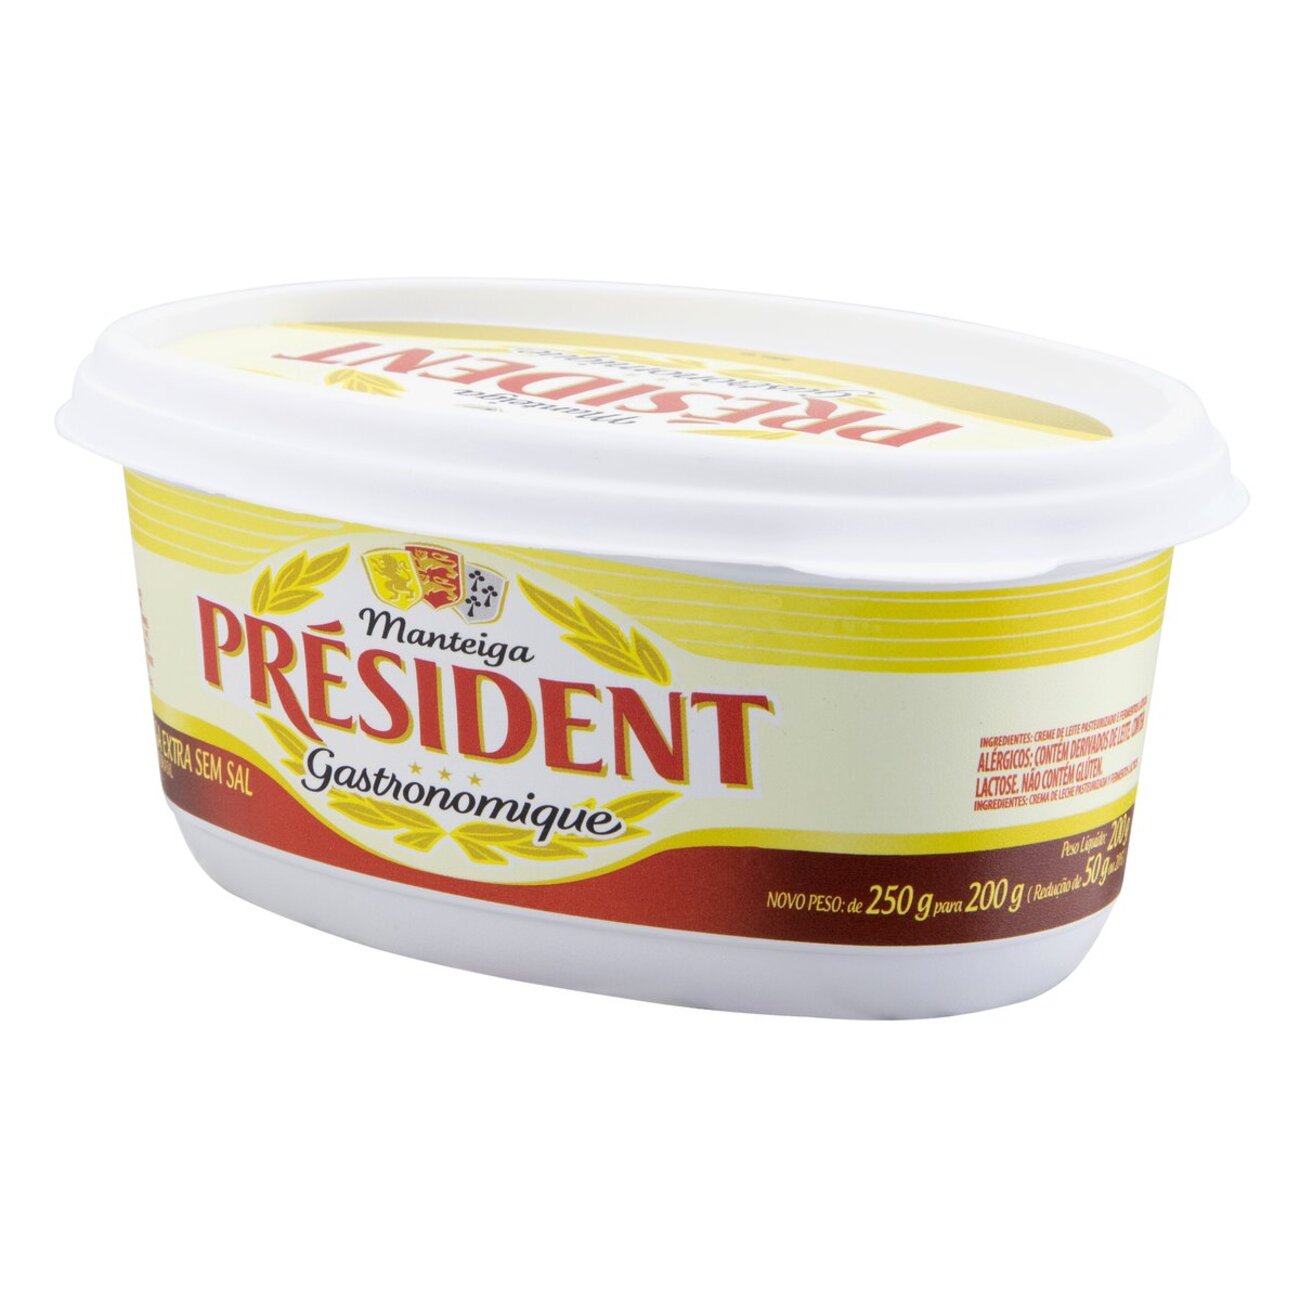 Manteiga Extra sem Sal Prsident Gastronomique Pote 200g